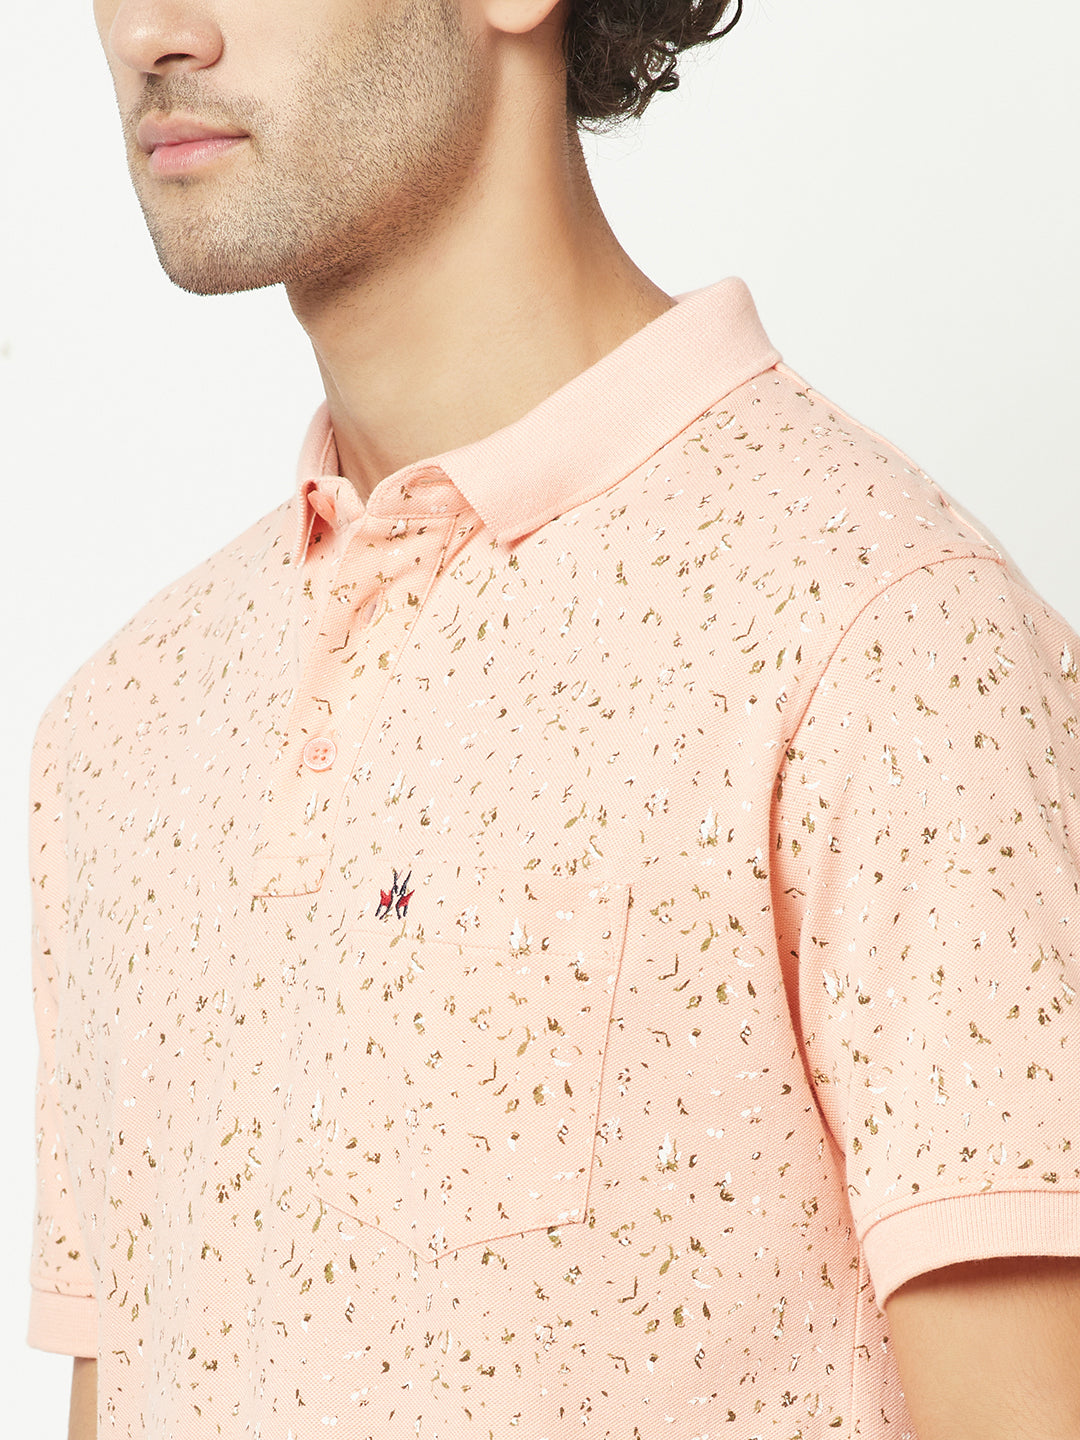  Peach Mini-Floral Polo T-Shirt